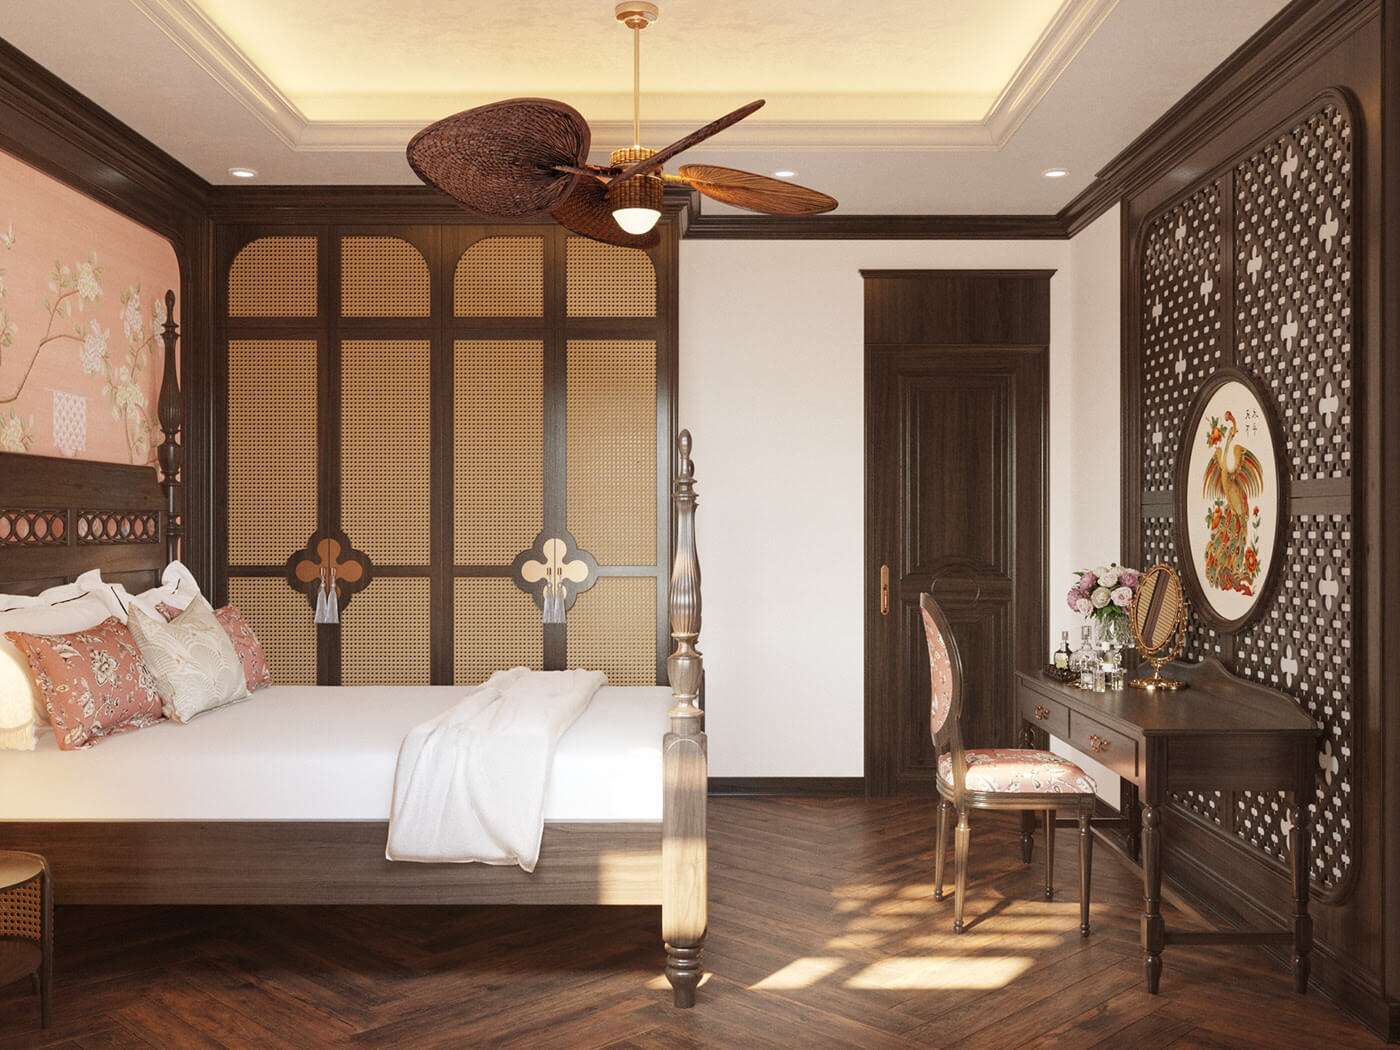 Nội thất gỗ trong phòng ngủ tạo điểm nhấn với những chi tiết tiện tròn tinh tế